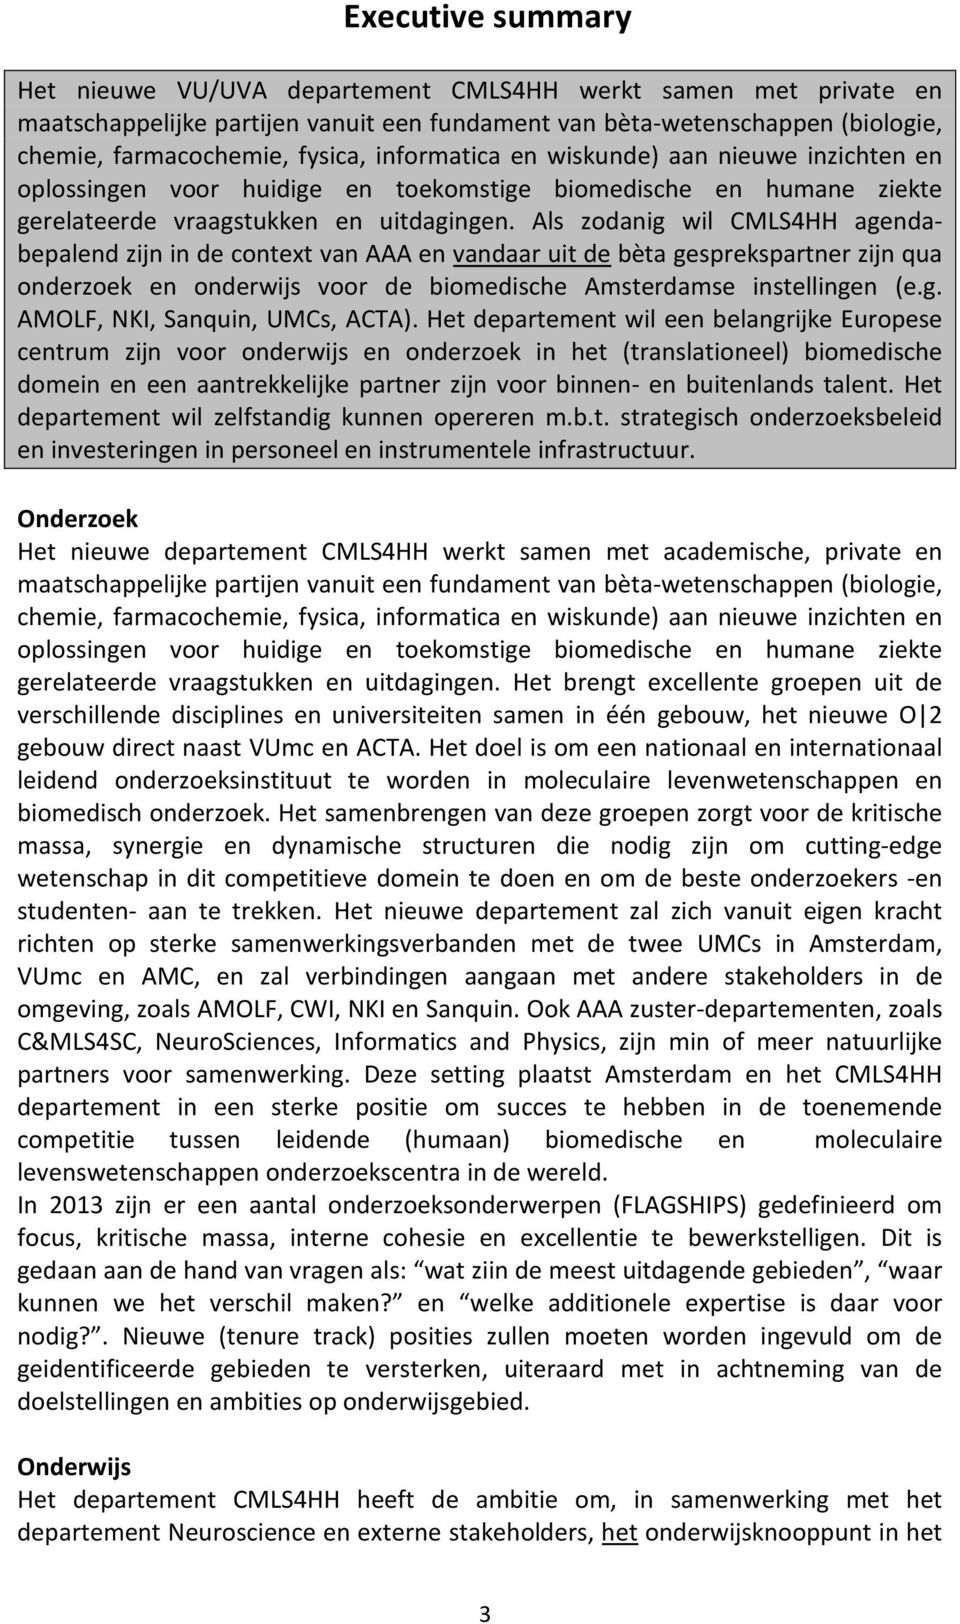 Als zodanig wil CMLS4HH agendabepalend zijn in de context van AAA en vandaar uit de bèta gesprekspartner zijn qua onderzoek en onderwijs voor de biomedische Amsterdamse instellingen (e.g. AMOLF, NKI, Sanquin, UMCs, ACTA).